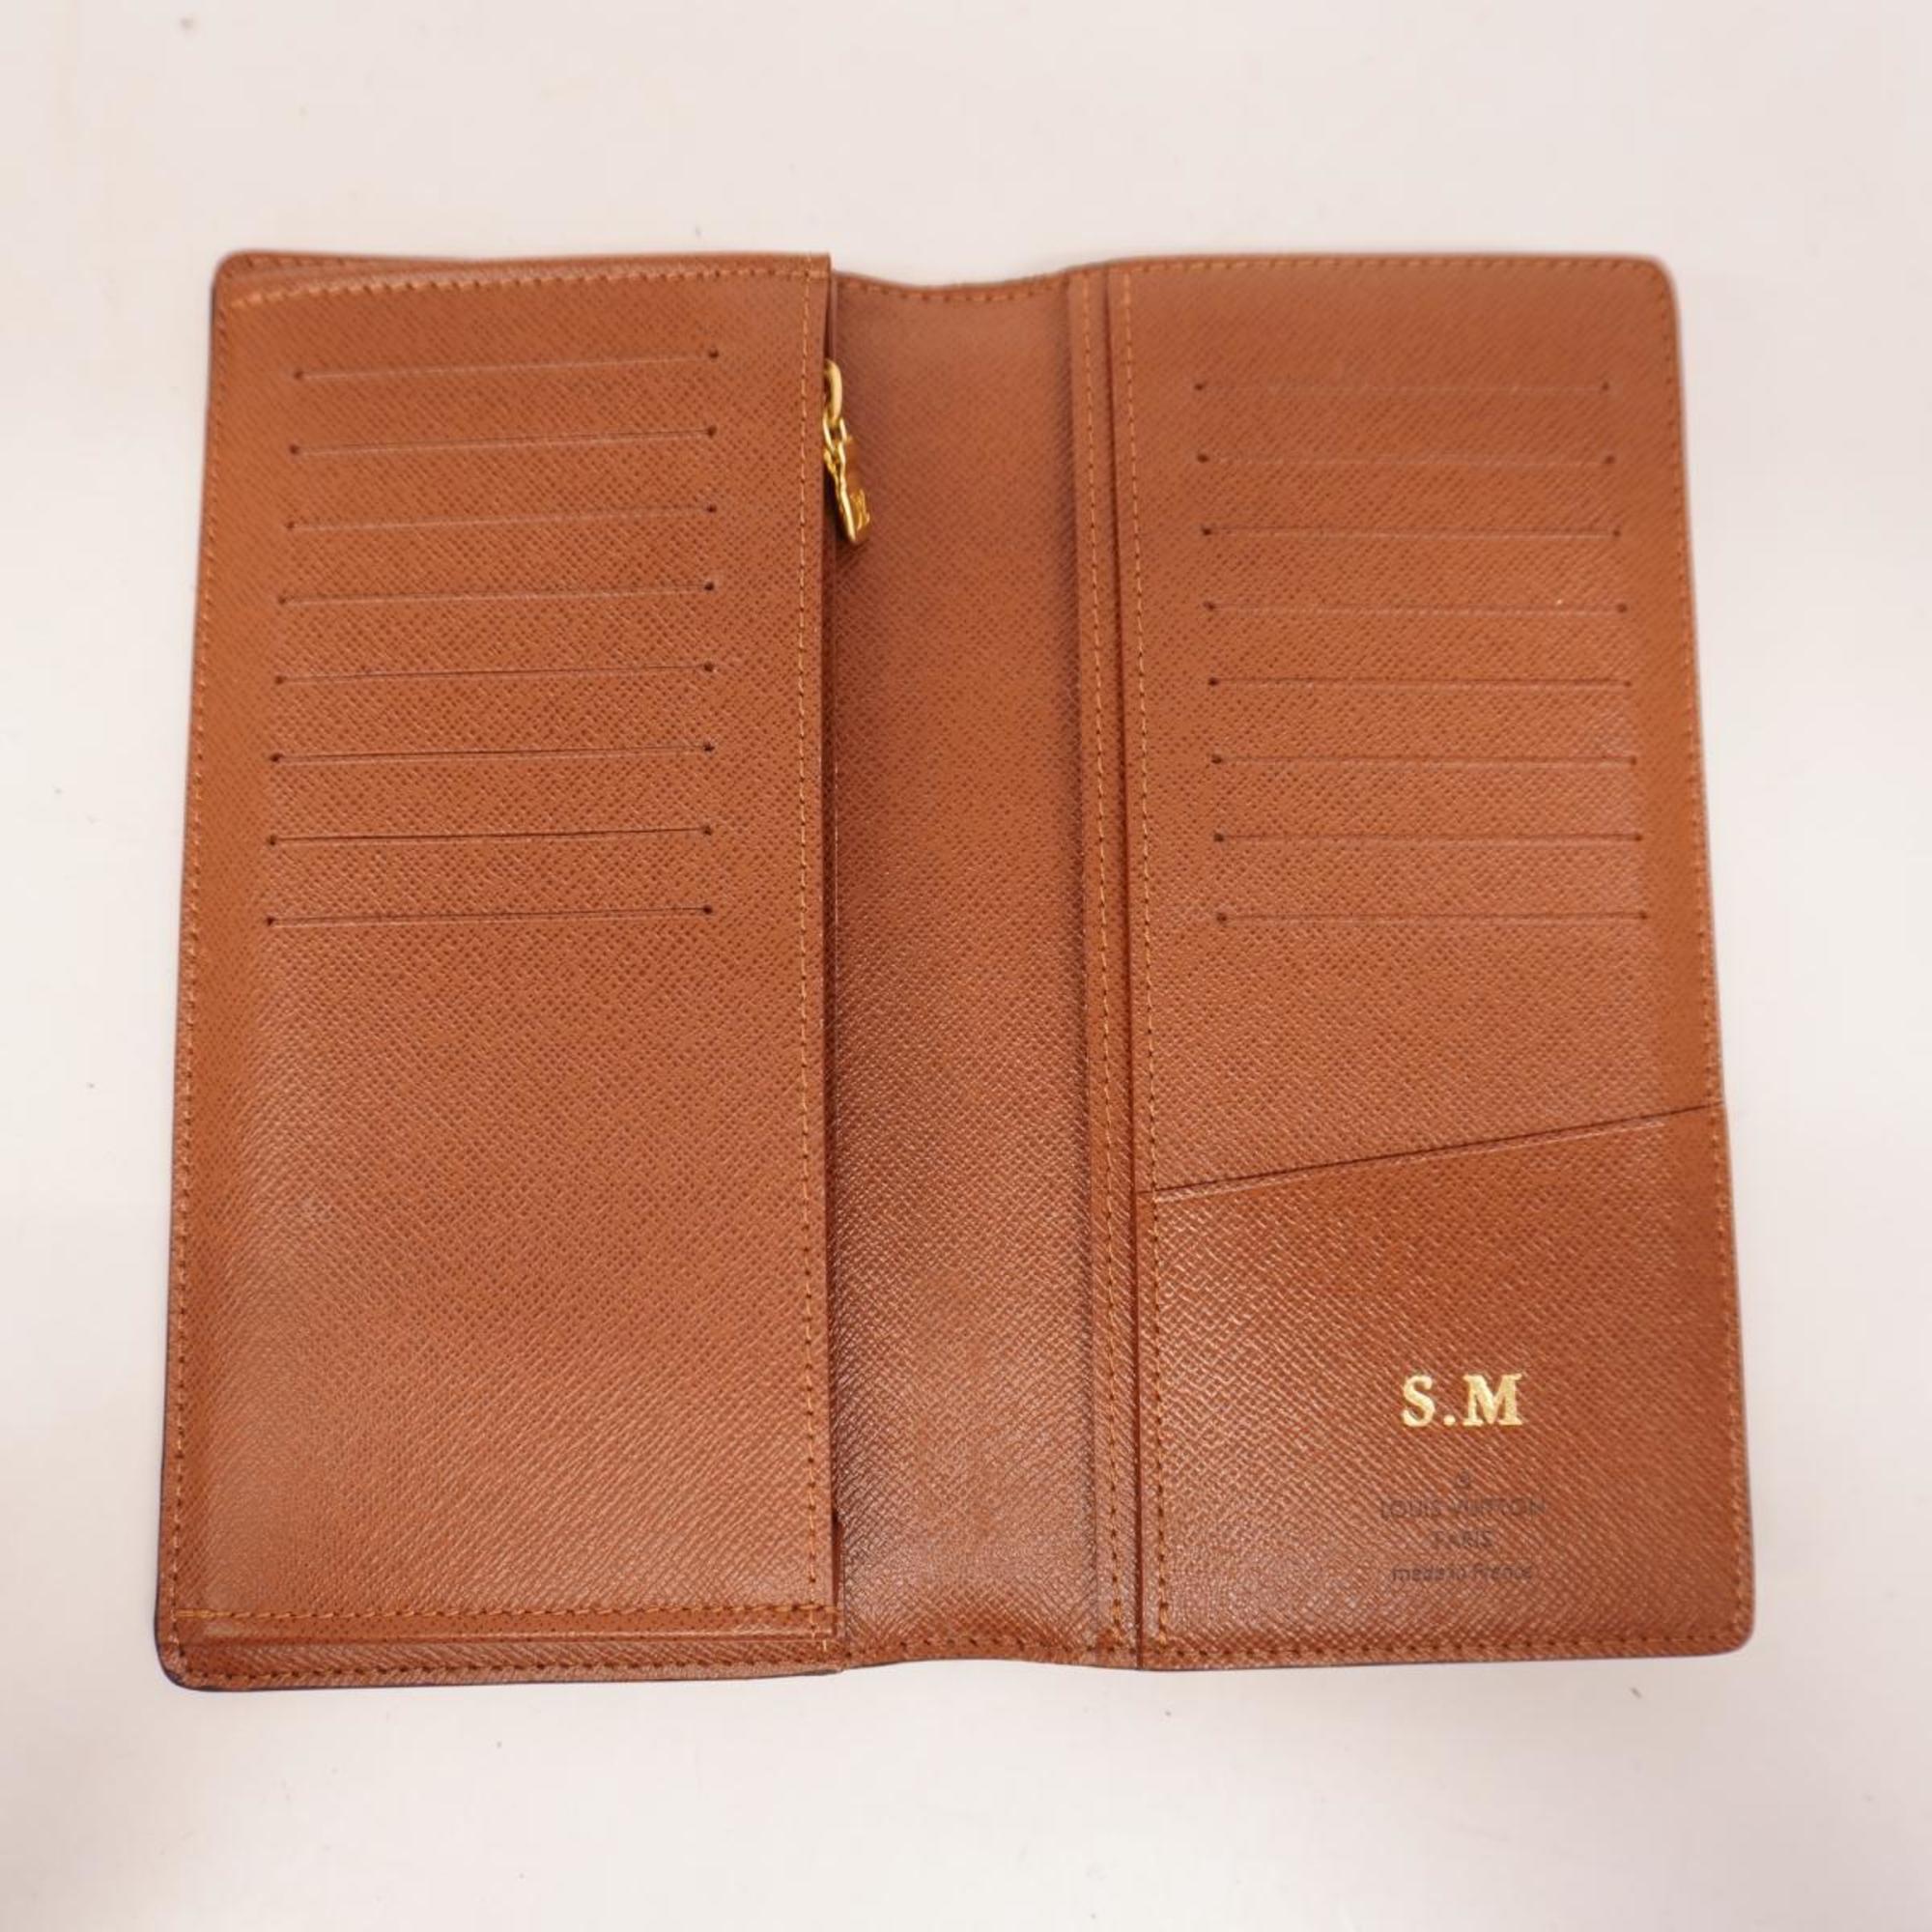 Louis Vuitton Long Wallet Monogram Portefeuille Brazza M66540 Brown Men's